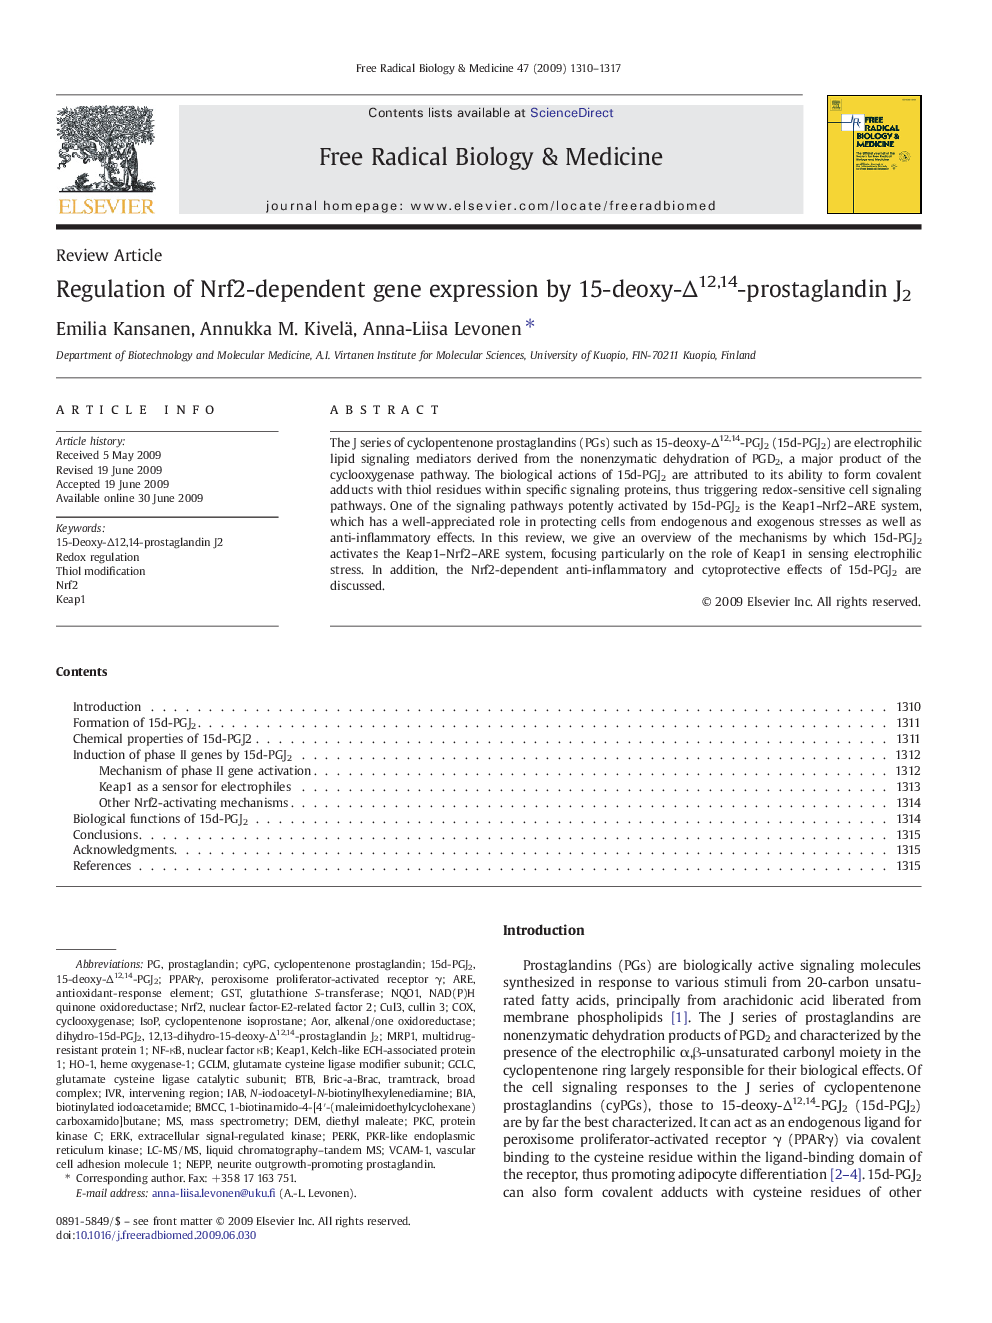 Regulation of Nrf2-dependent gene expression by 15-deoxy-Δ12,14-prostaglandin J2